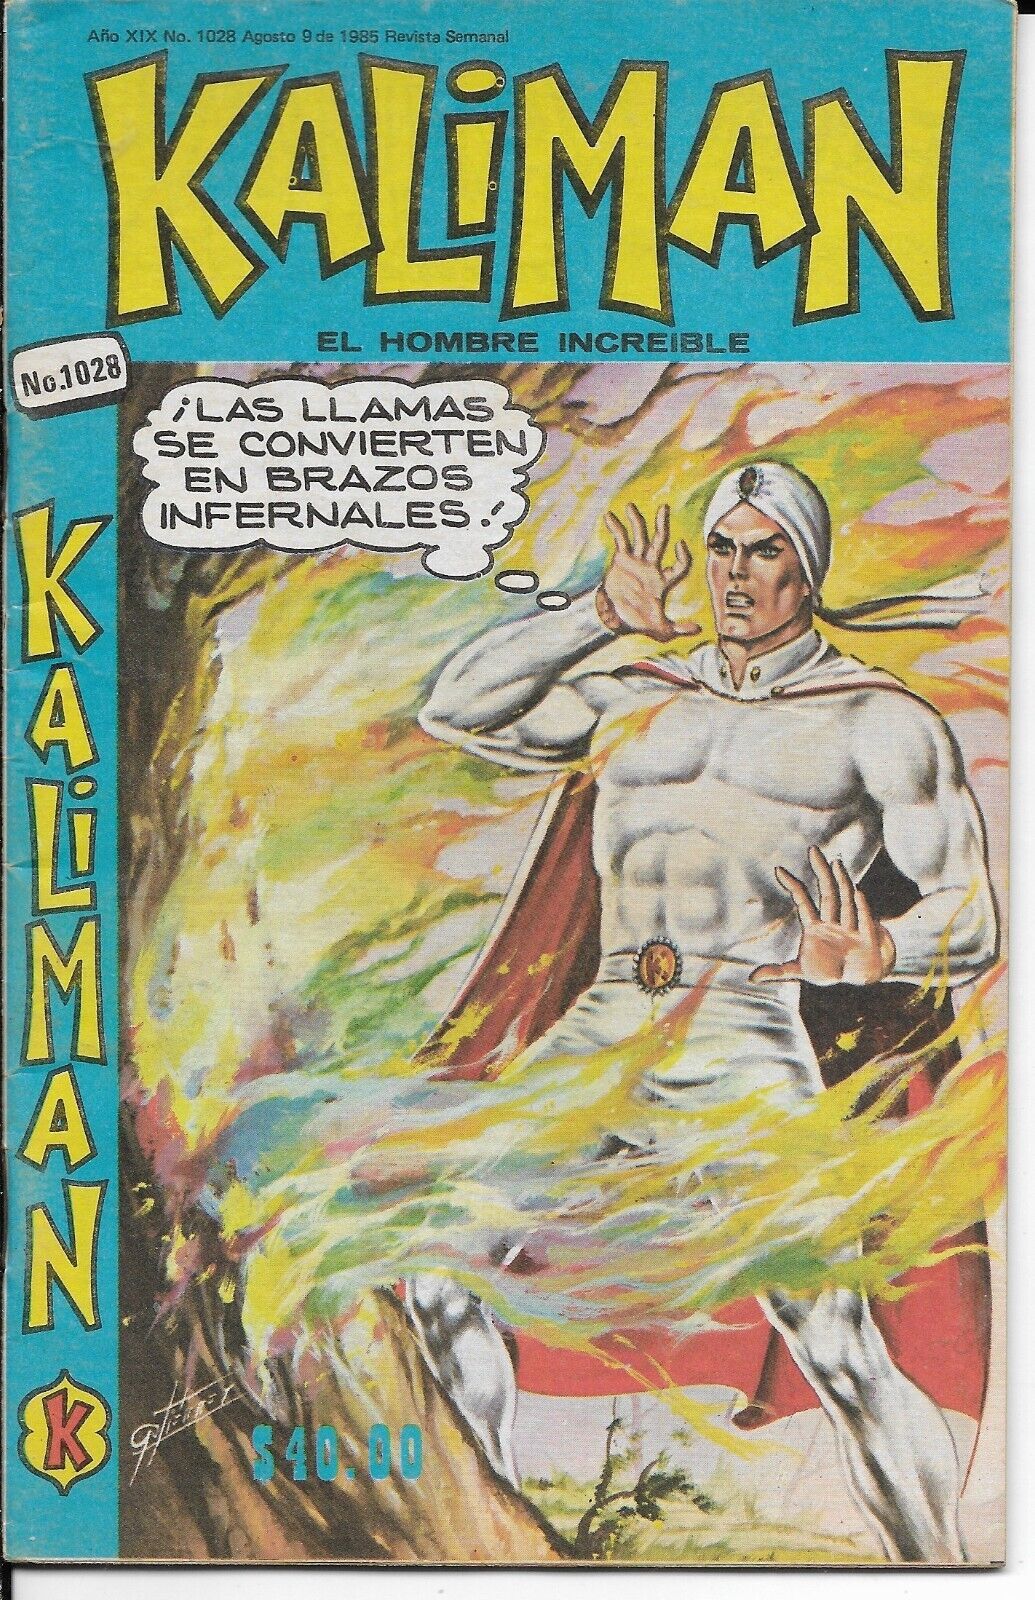 Kaliman El Hombre Increíble #1028 - Agosto 9, 1985 - Mexico